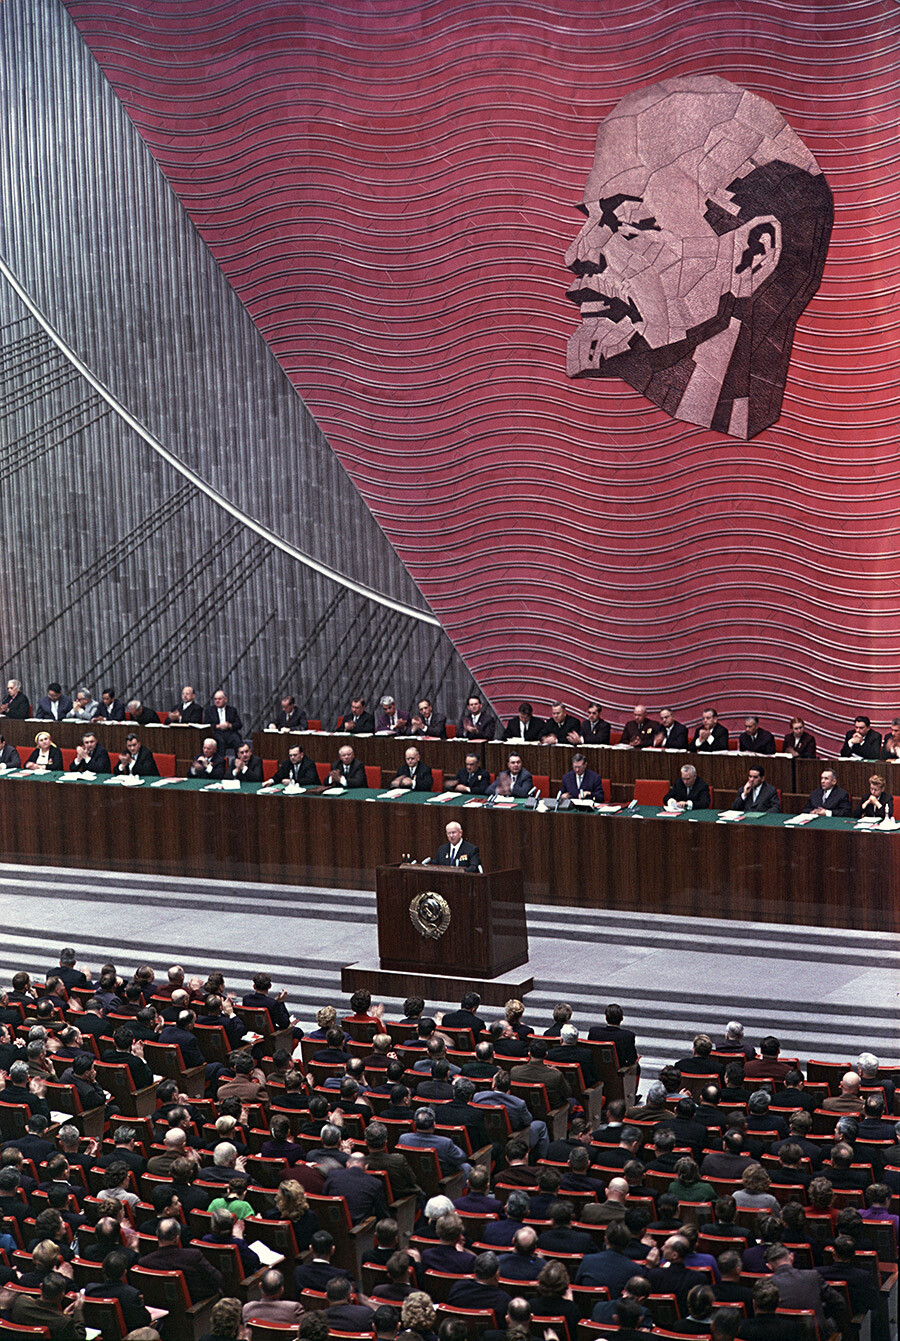 Intervention de Nikita Khrouchtchev au XXIIe Congrès du Parti communiste de l'Union soviétique au Kremlin de Moscou, en octobre 1961